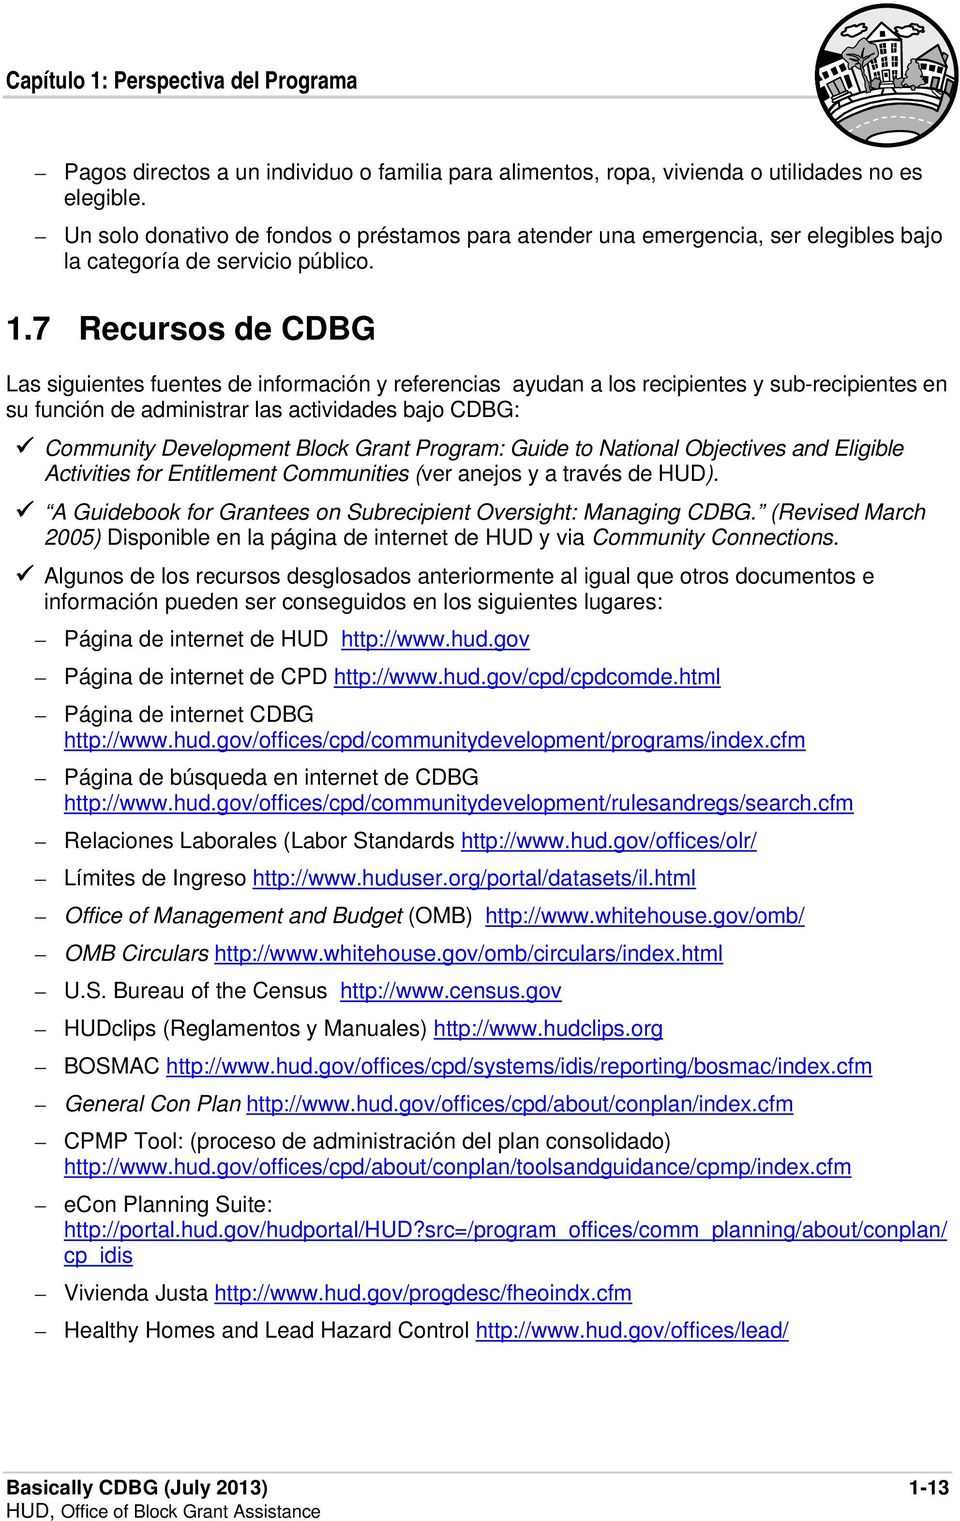 7 Recursos de CDBG Las siguientes fuentes de información y referencias ayudan a los recipientes y sub-recipientes en su función de administrar las actividades bajo CDBG: Community Development Block